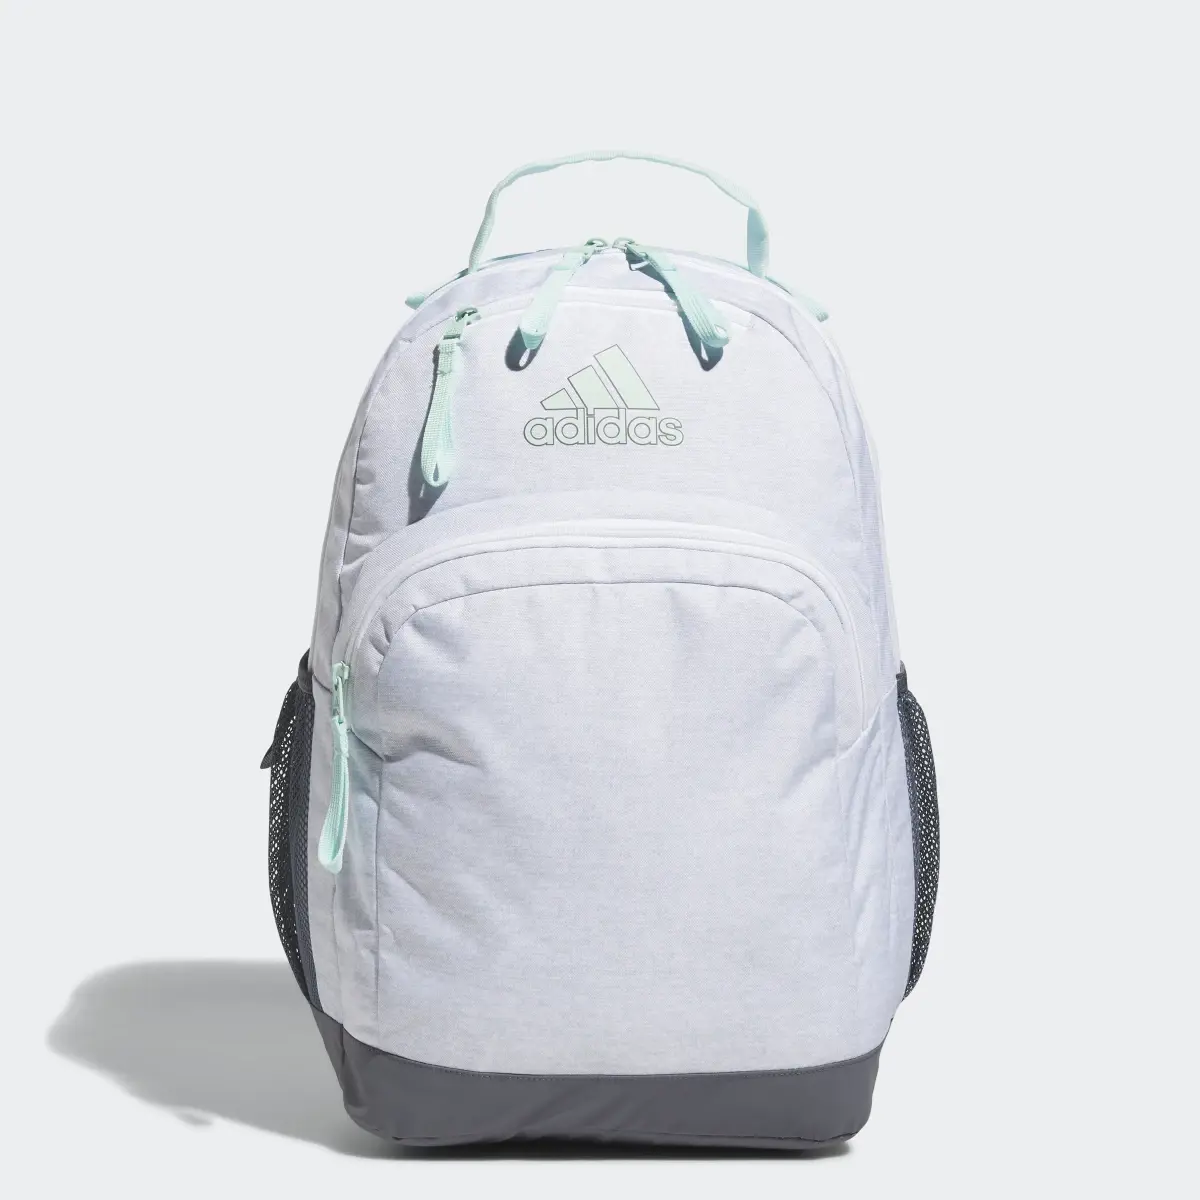 Adidas Adaptive Backpack. 1